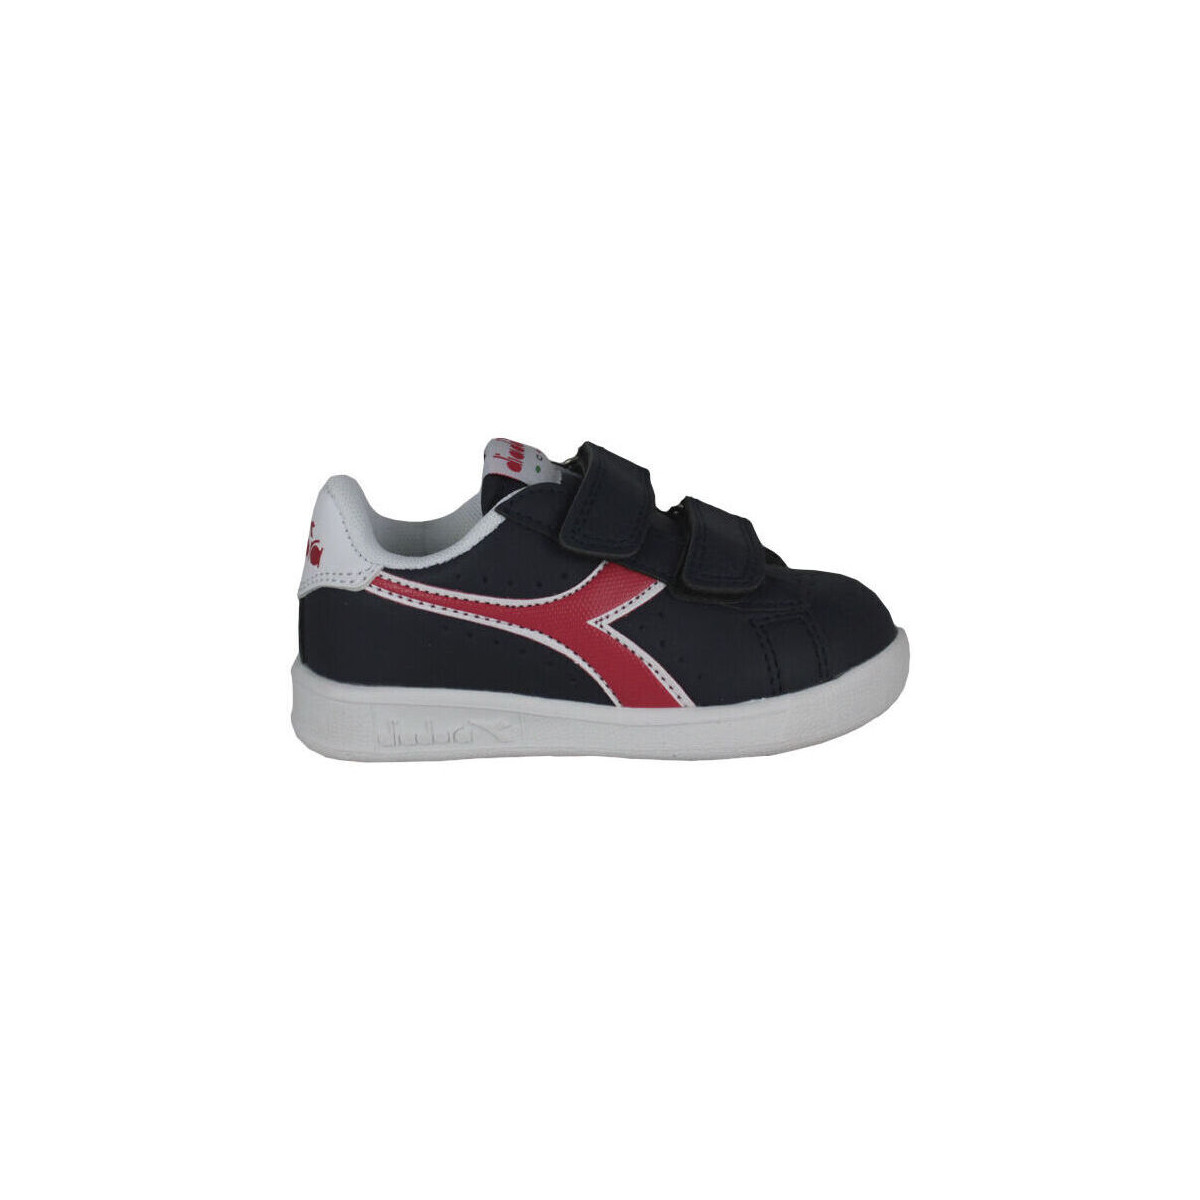 Sneakers Diadora 101.173339 01 C8594 Black iris/Poppy red/White